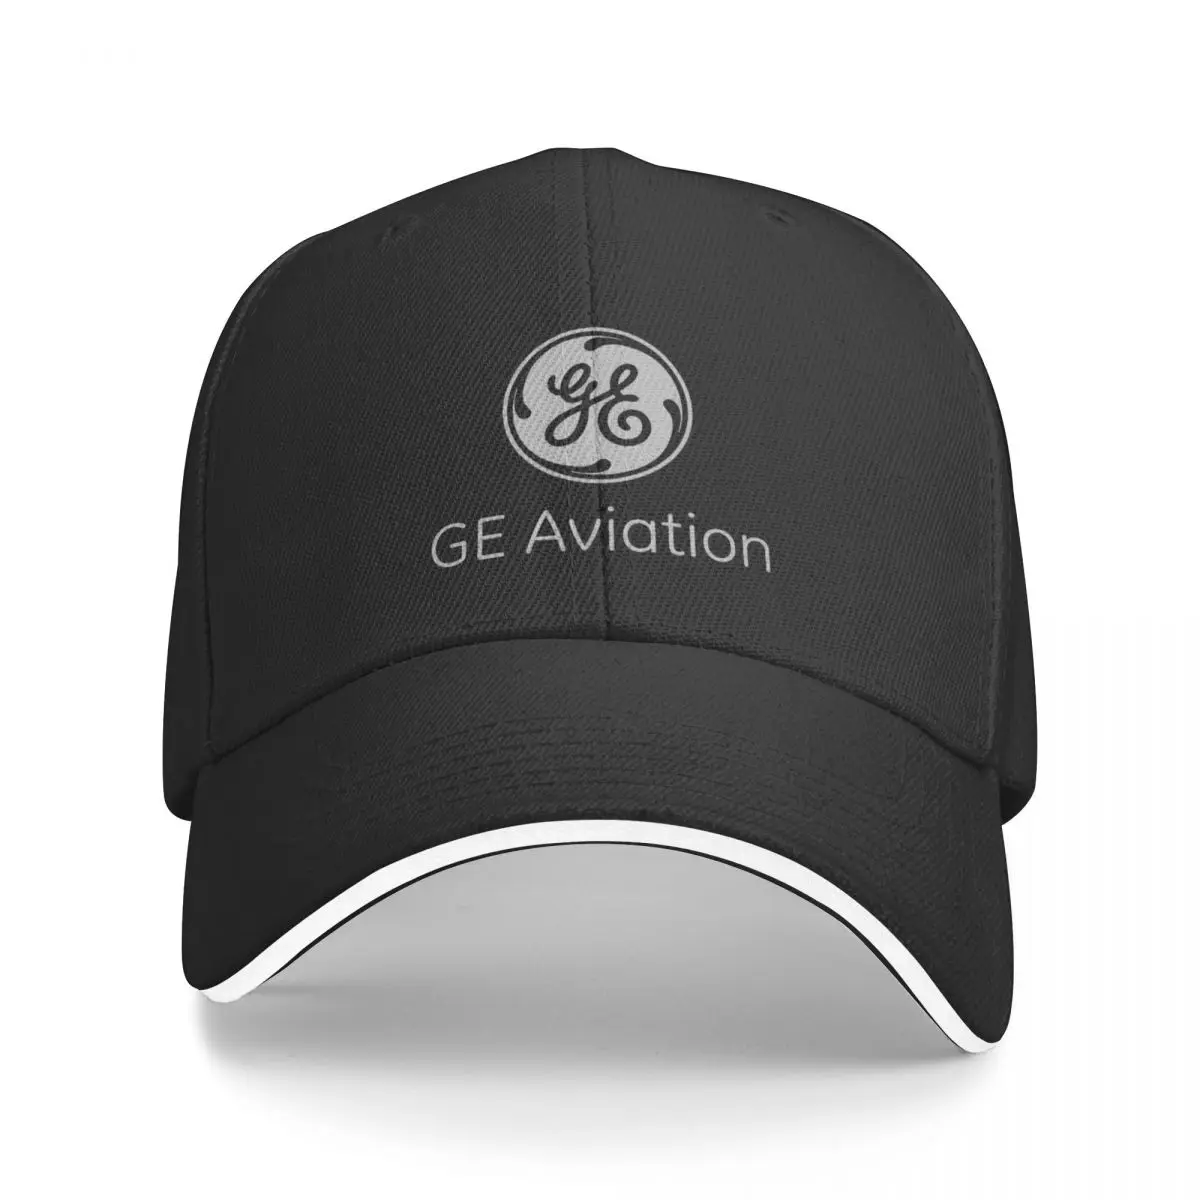 Новая серая бейсболка GE Aviation с тепловым козырьком, хип-хоп шляпа, мужская и женская